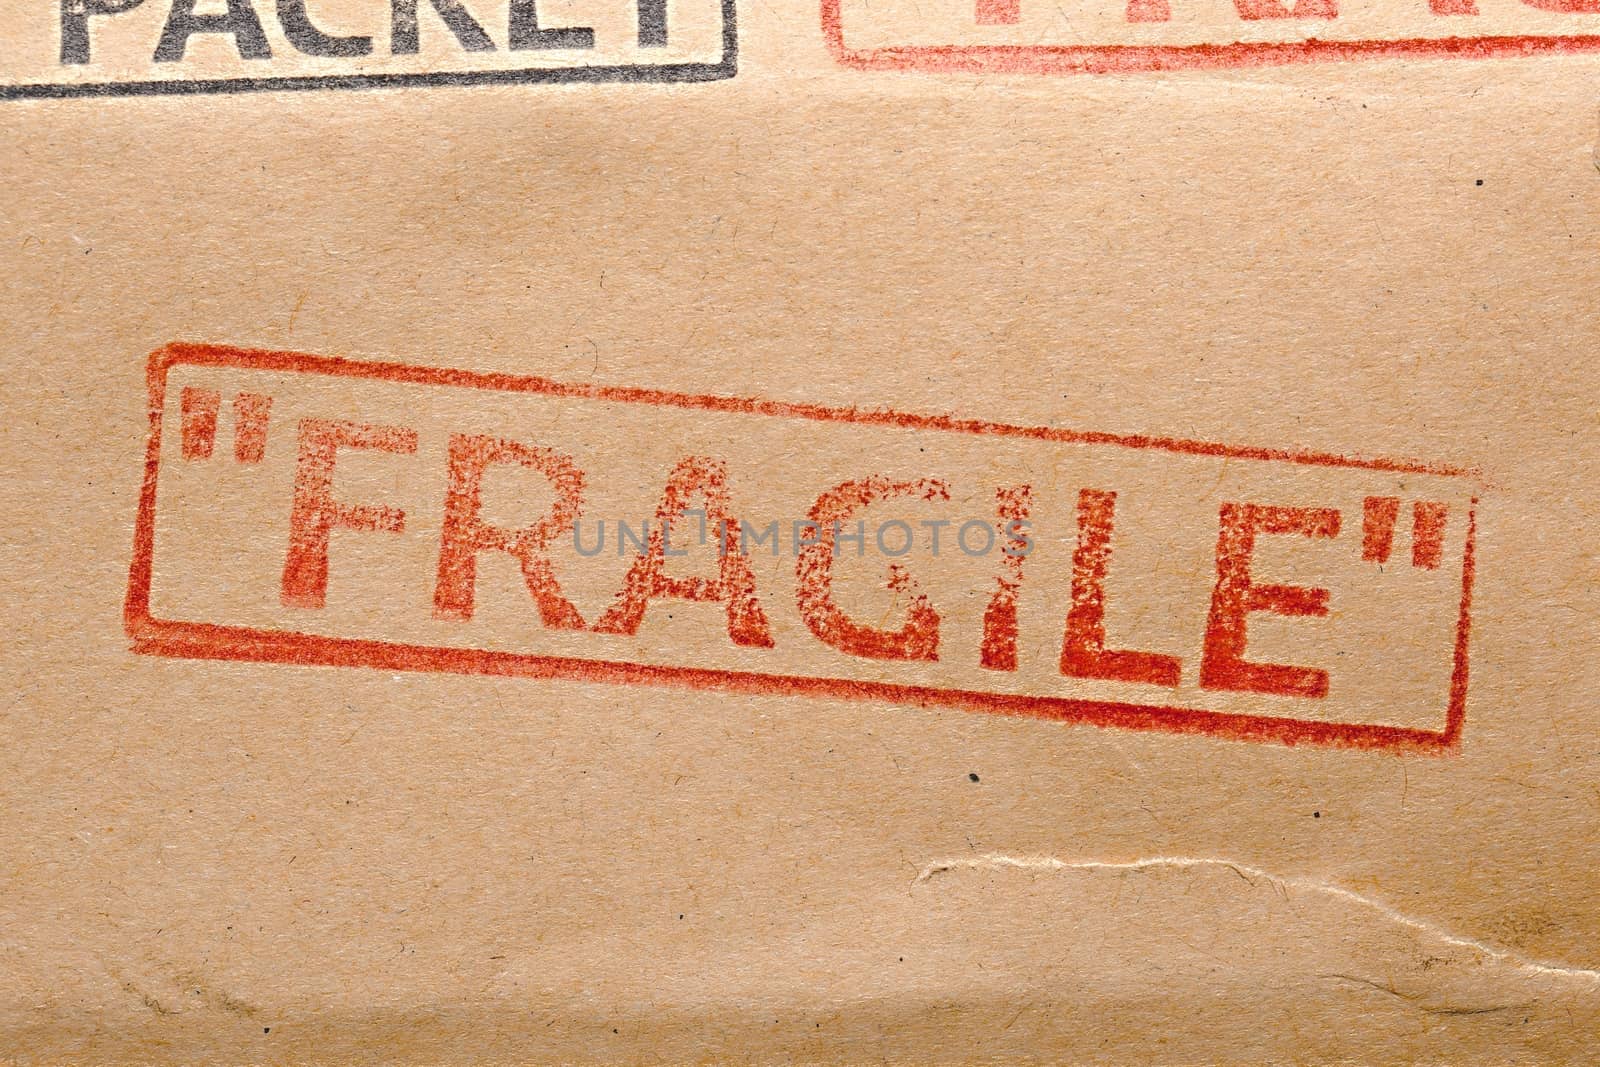 Fragile stamp by Gudella